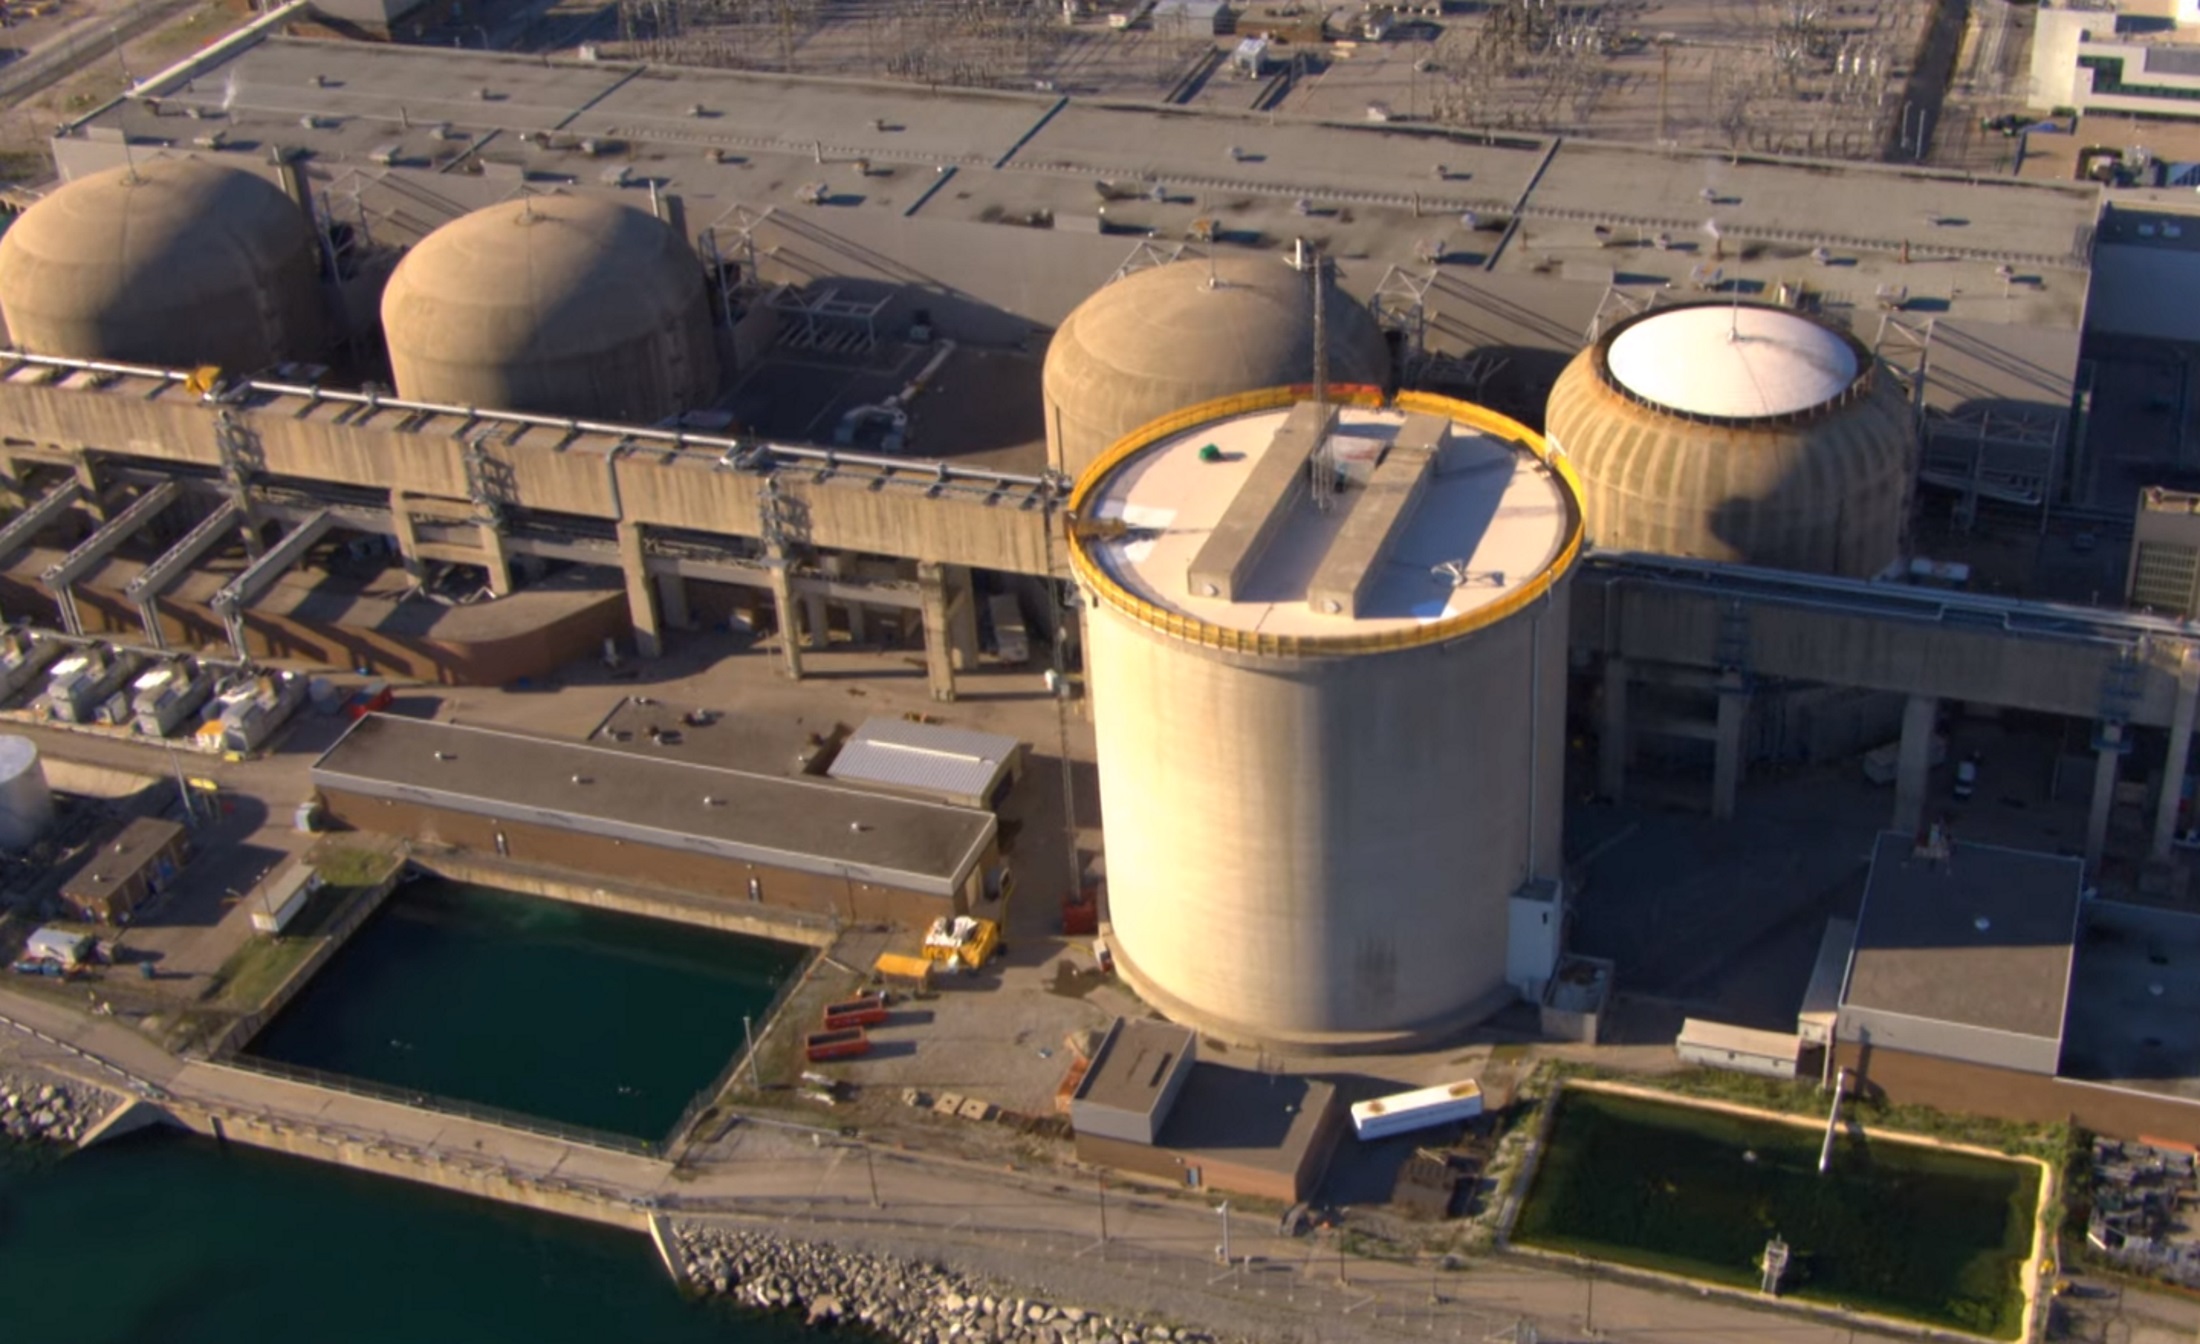 Συναγερμός για “περιστατικό” σε πυρηνικό σταθμό στο Οντάριο [Video]